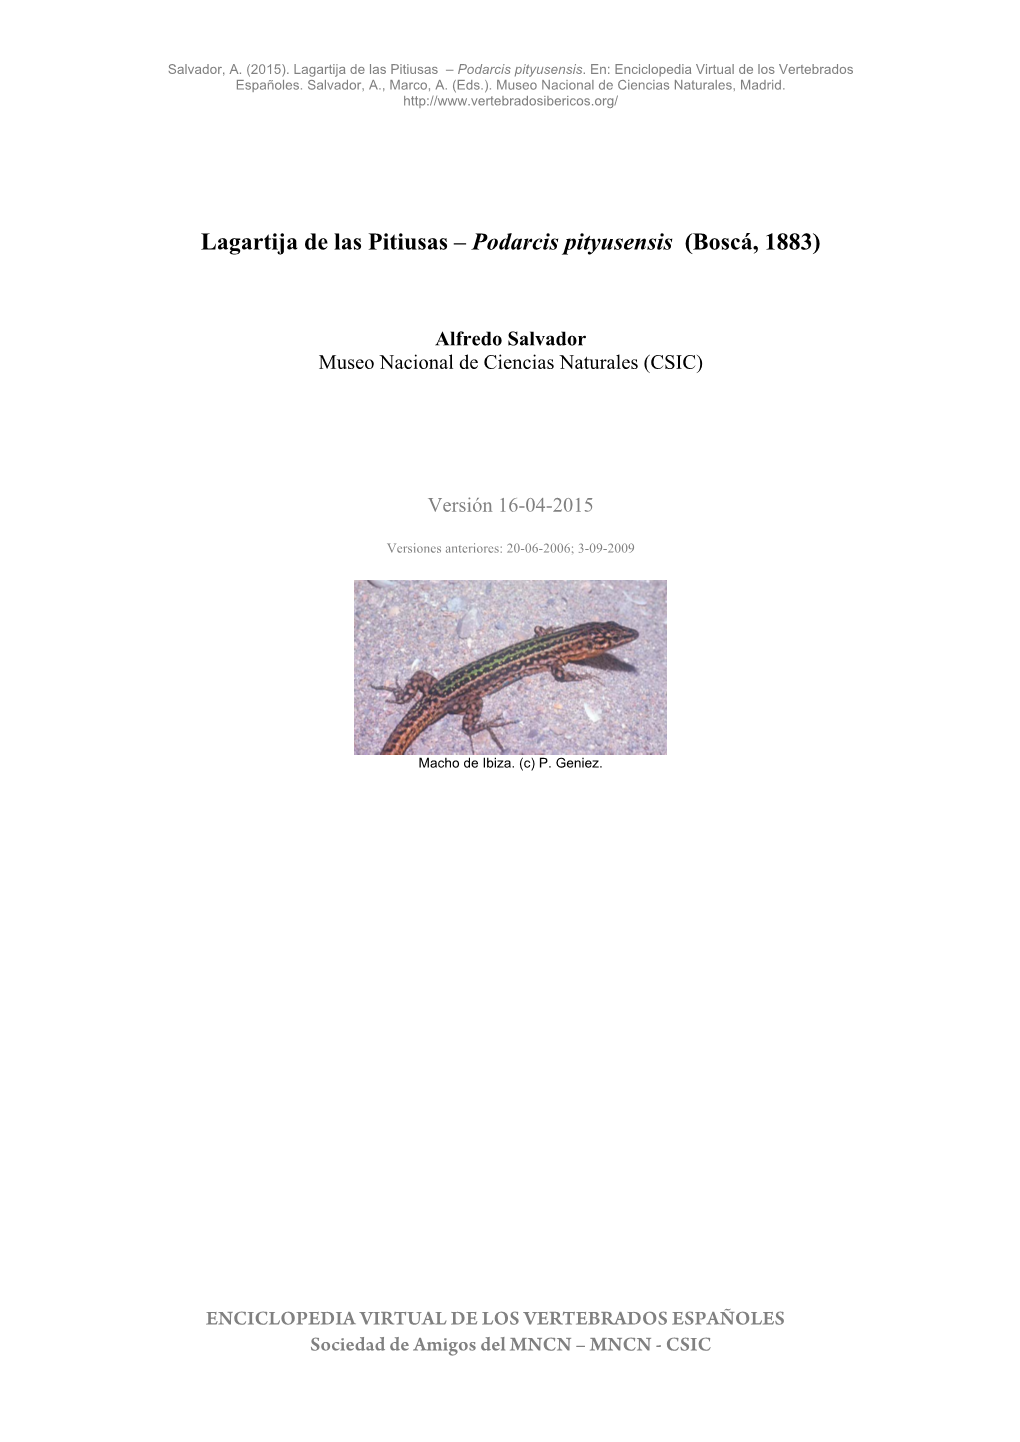 Lagartija De Las Pitiusas – Podarcis Pityusensis (Boscá, 1883)